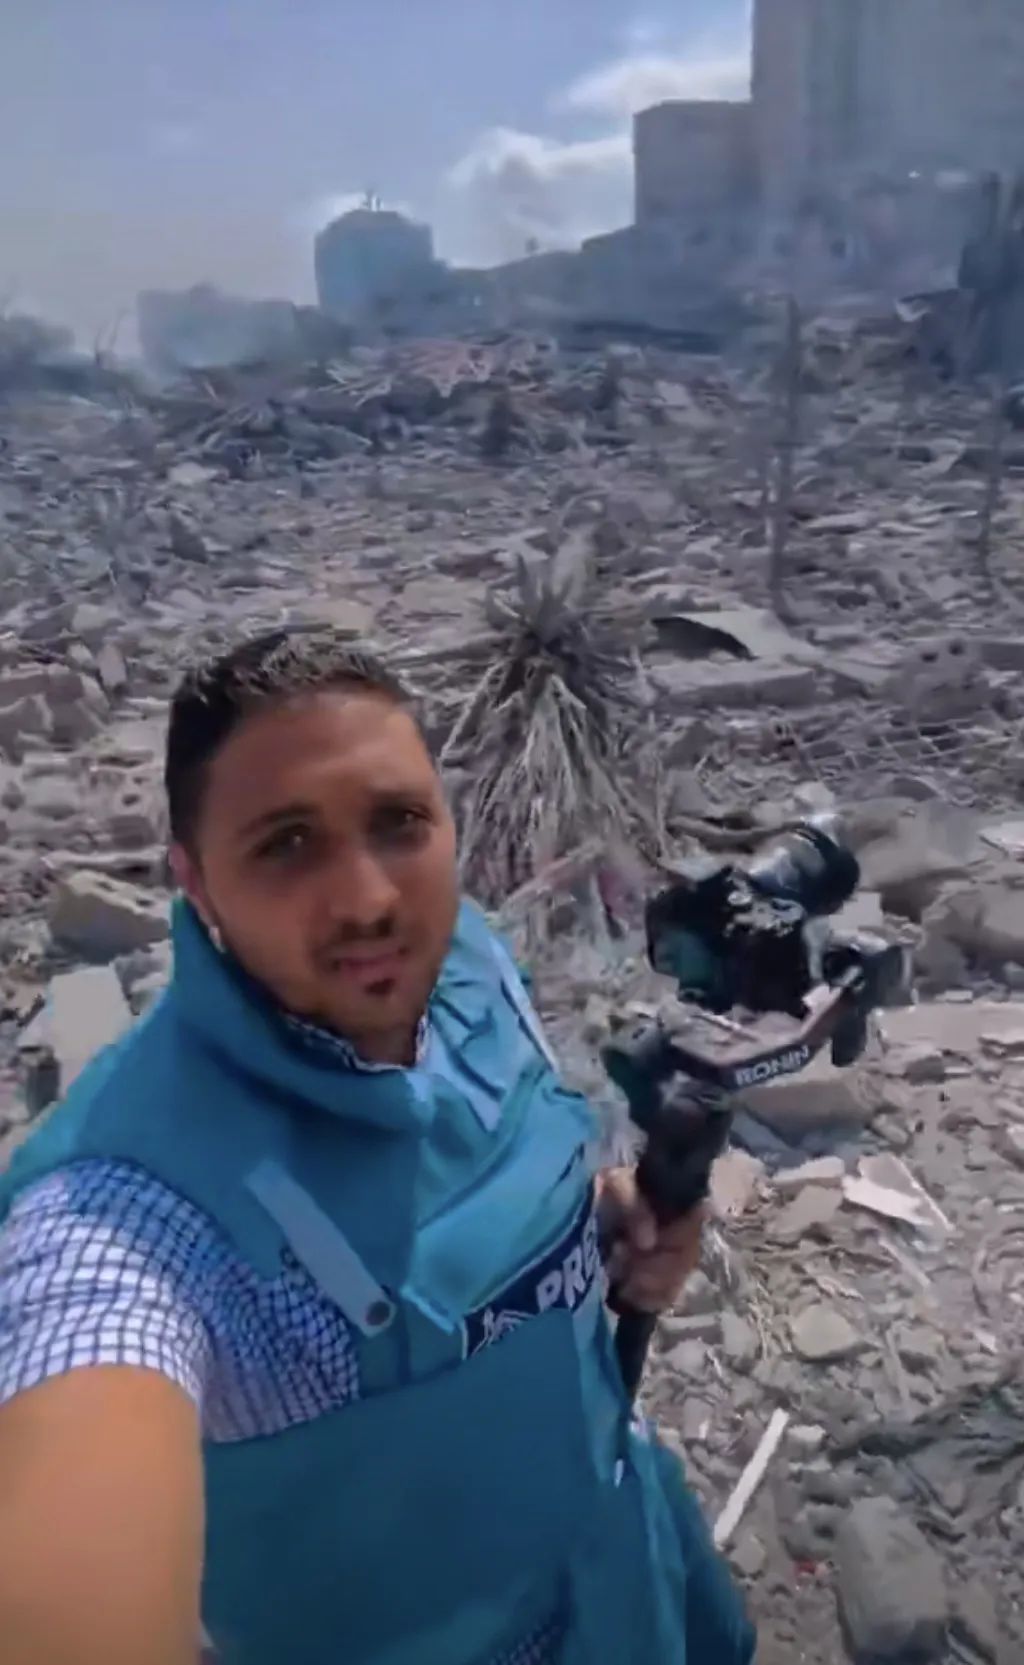 加沙战地记者为大家直播现场情况。来源/微博视频截图